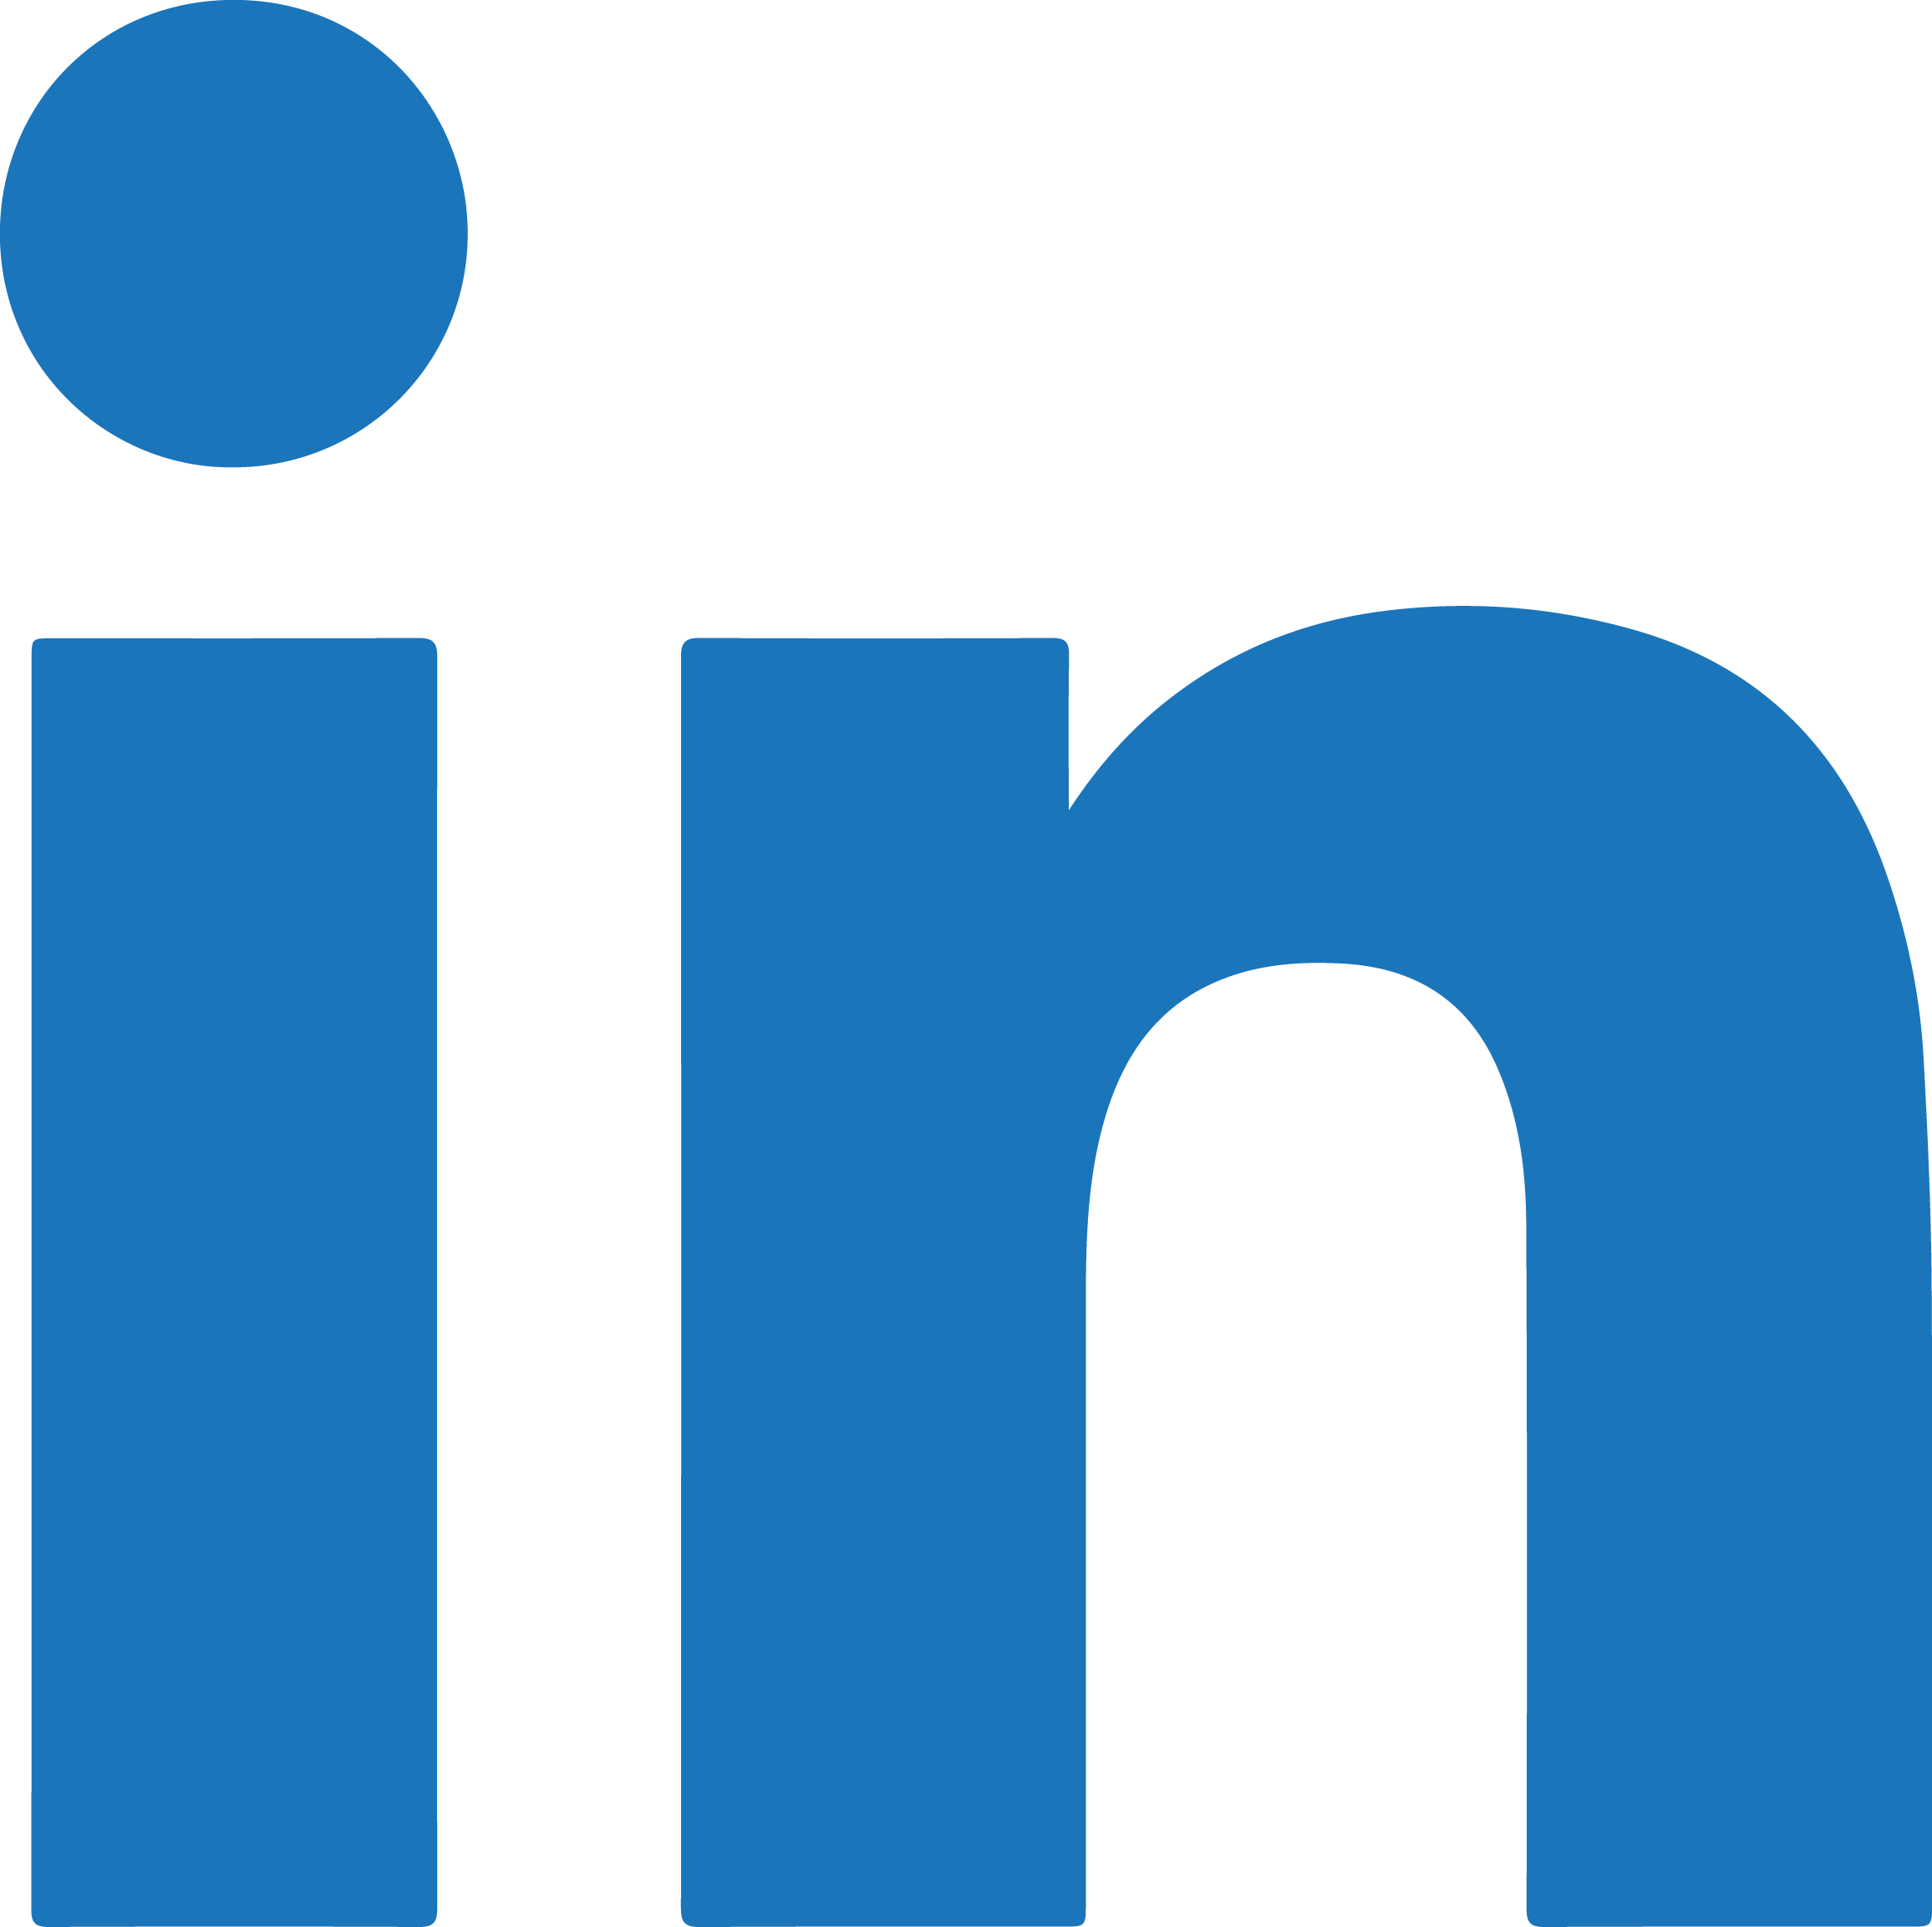 Linkdln Logo - LinkedIn logo PNG images free download